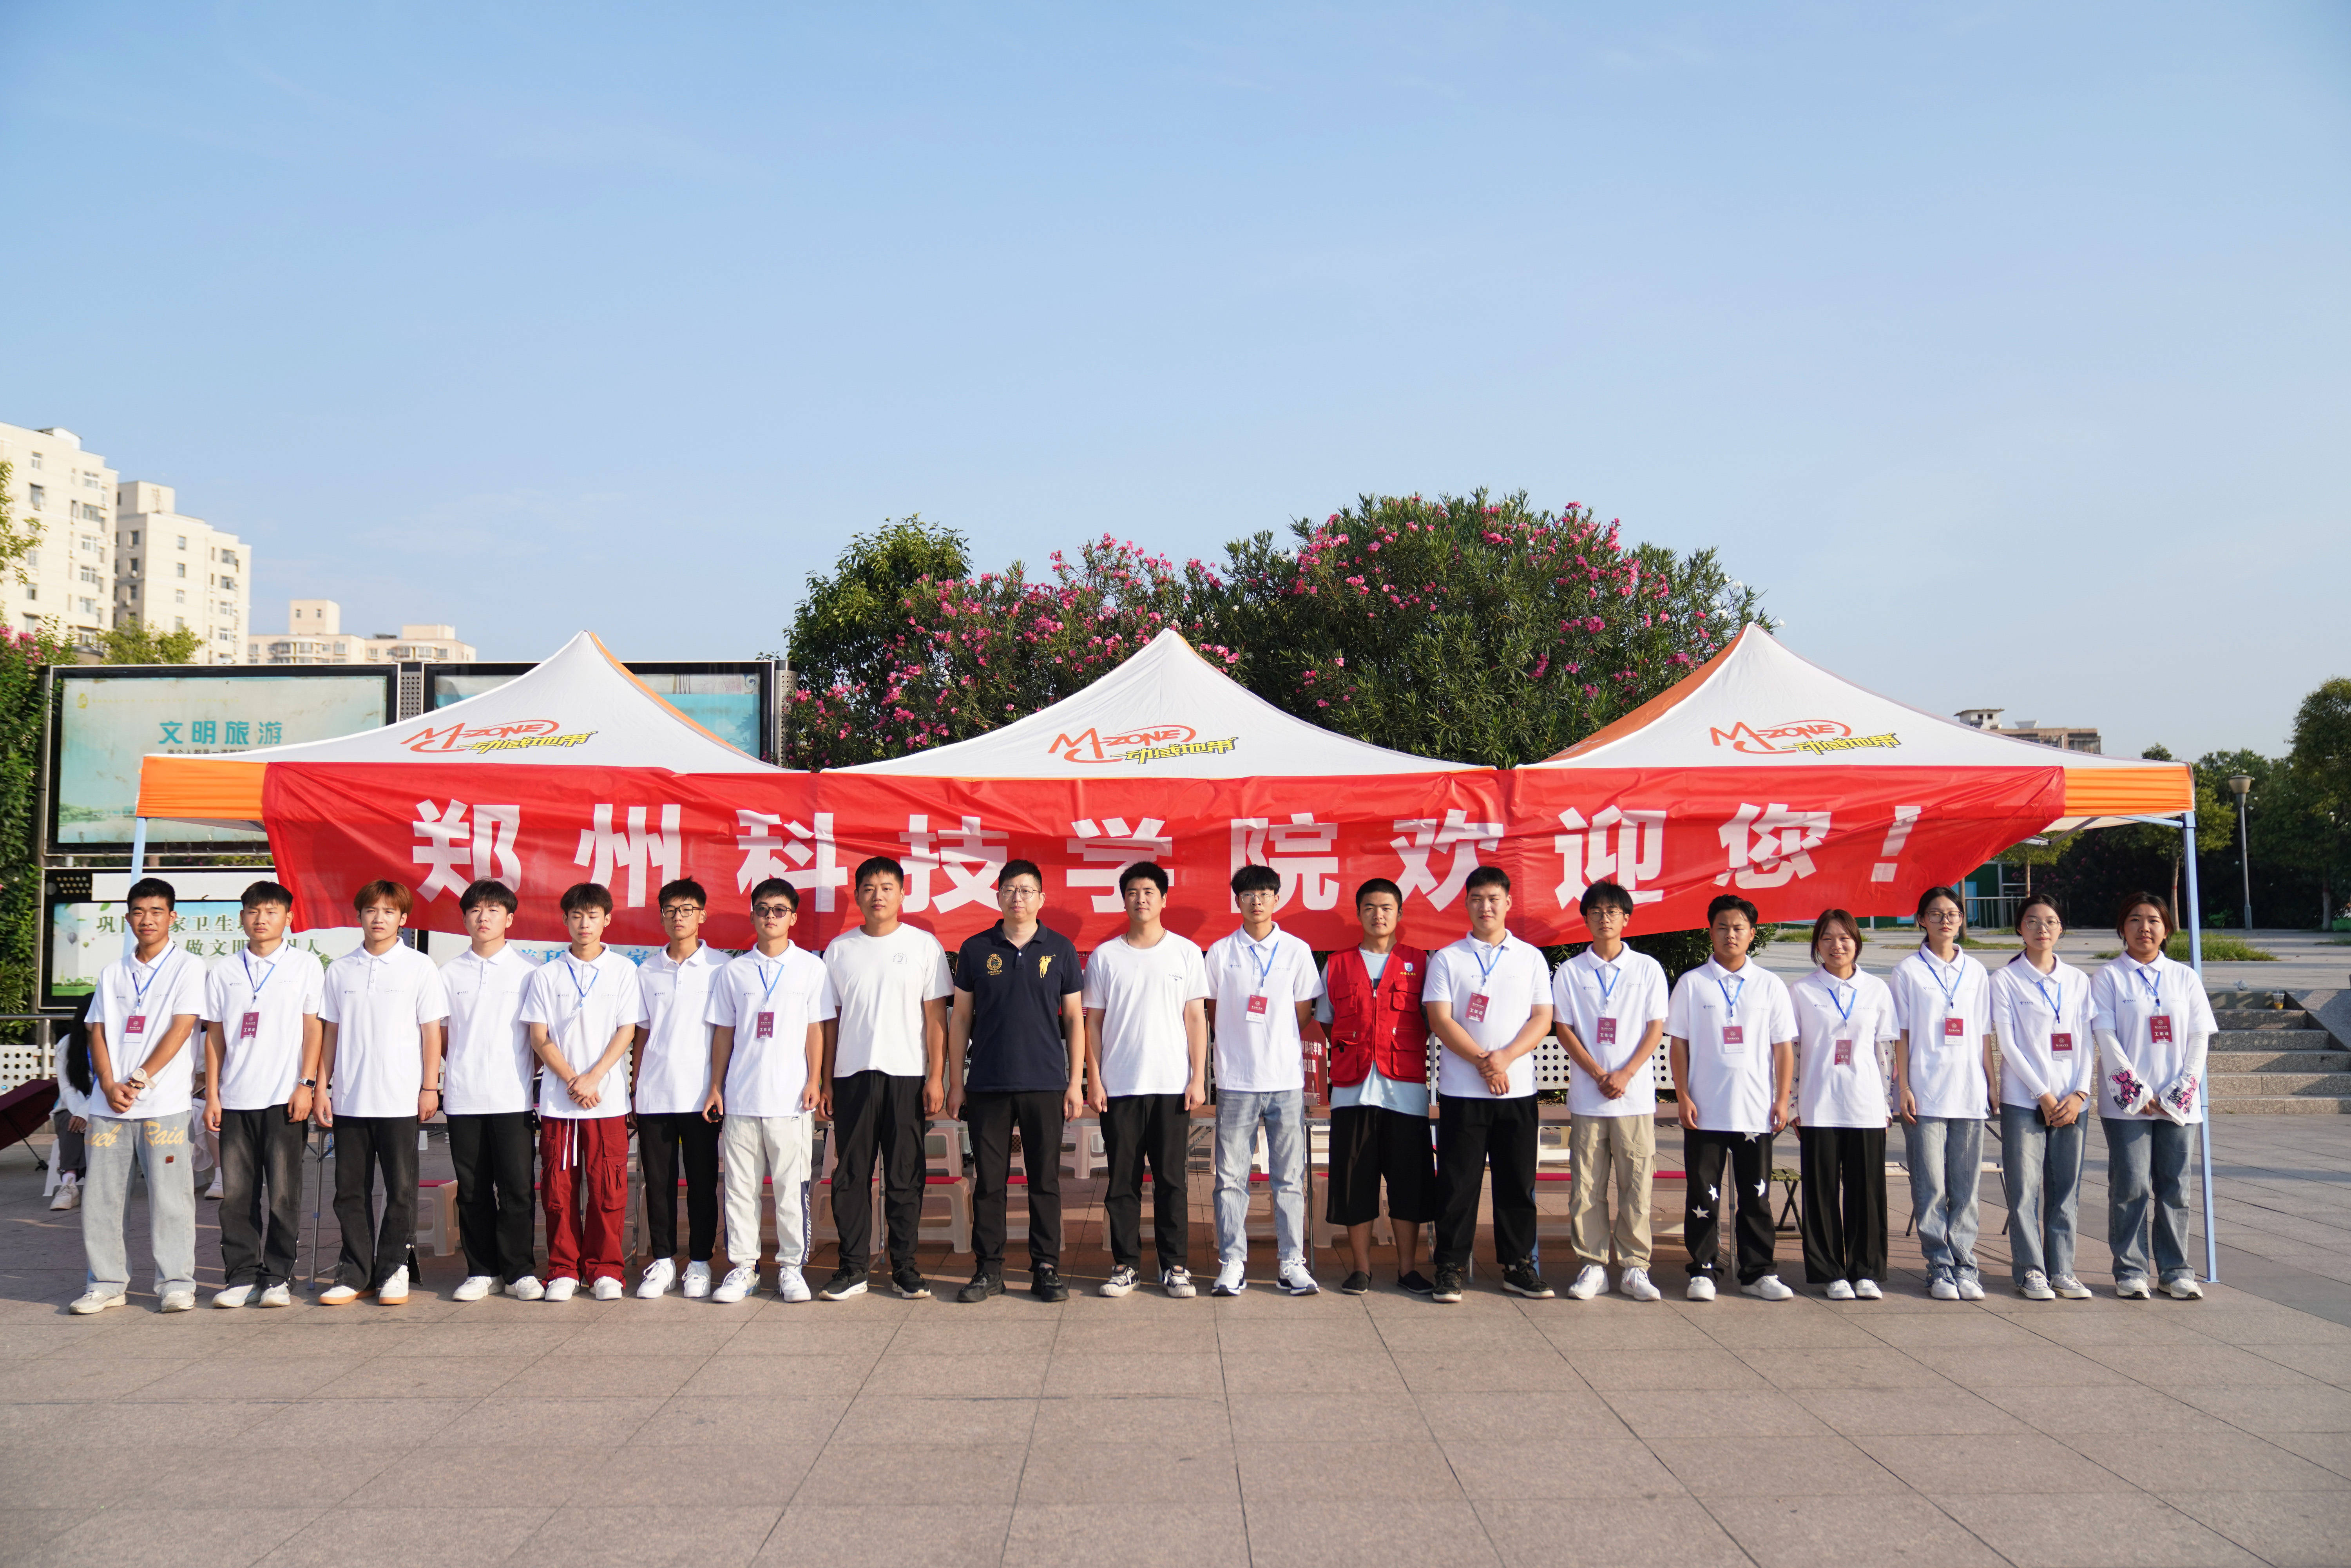 郑州科技学院迎新志愿者:贴心服务助力新生快乐入学